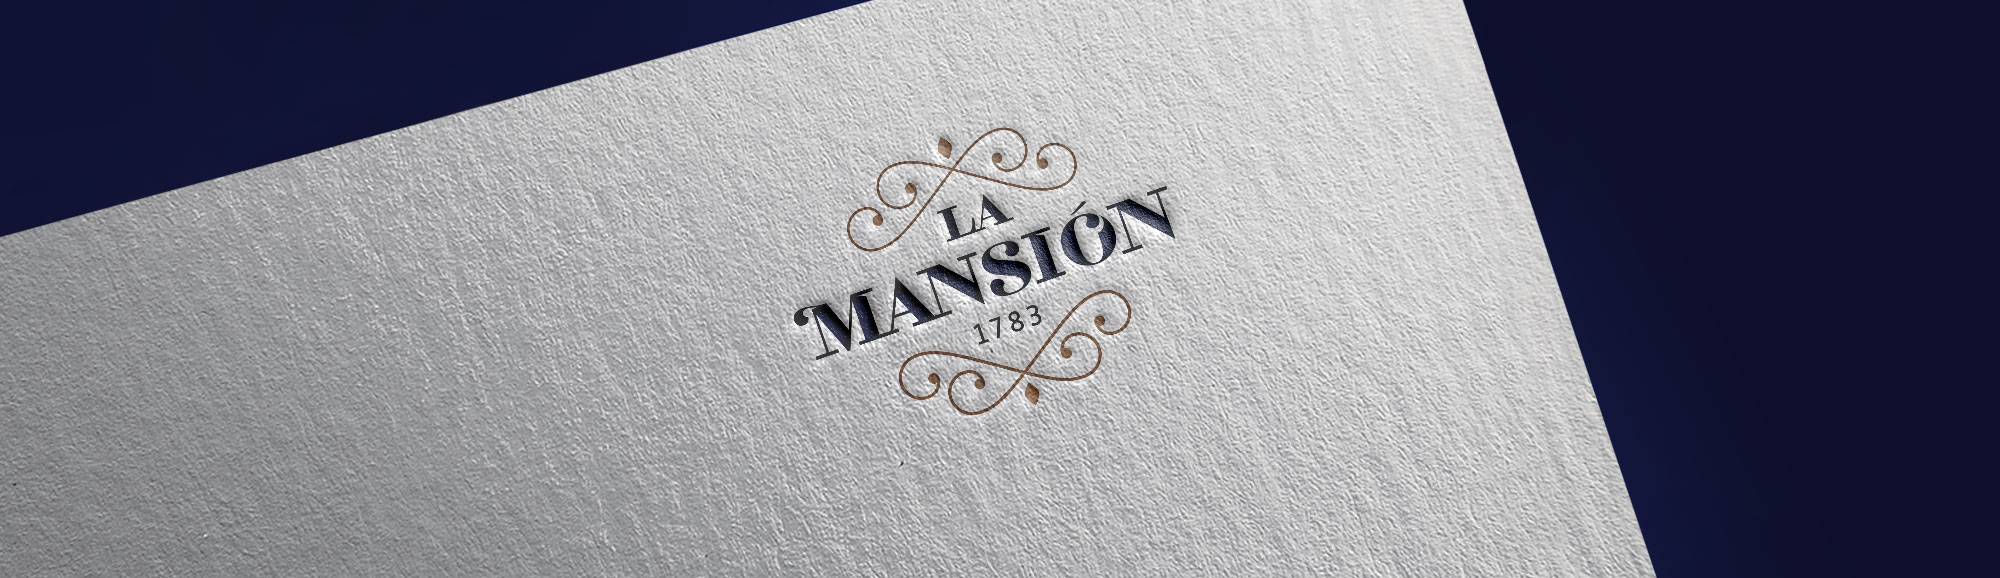 Diseño de marca para restaurante La Mansión en A Coruña